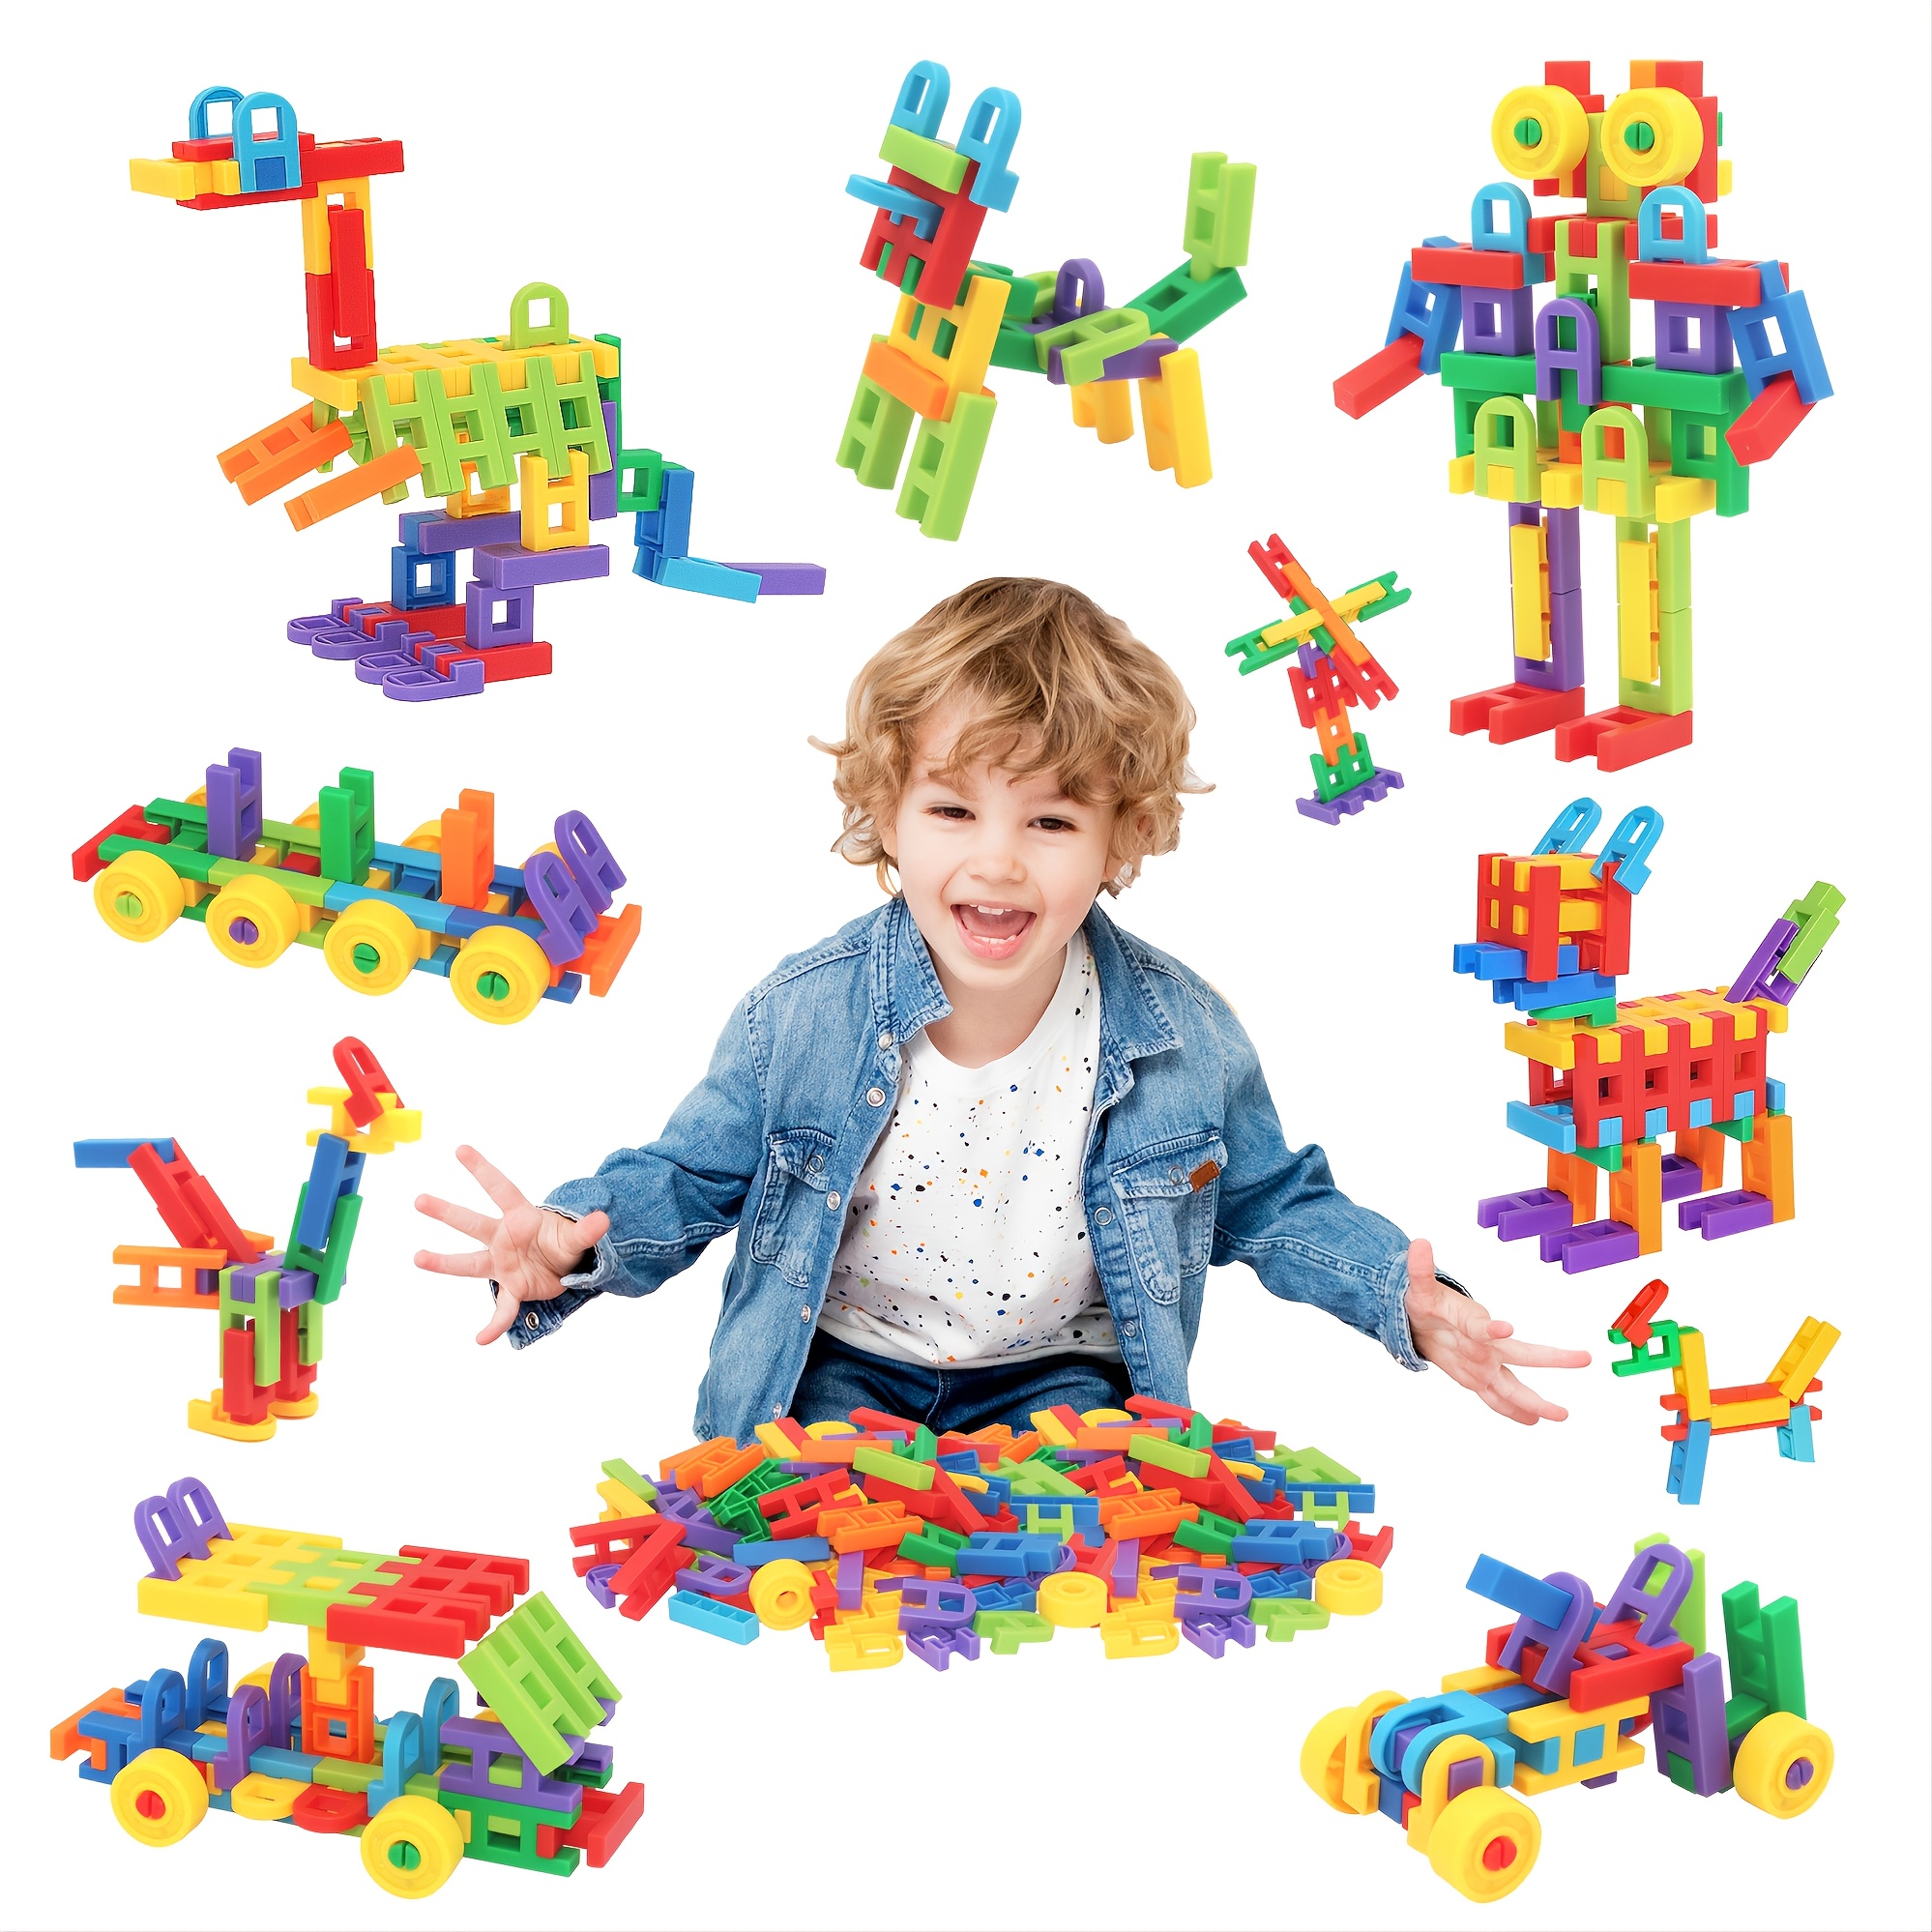 Juguetes para niños y niñas de 4 a 5 años, juguetes para niños pequeños,  bloques magnéticos, palos, azulejos, construcción, aprendizaje, educación,  tallo preescolar, juguetes para niños pequeños de 3 años, juguetes  Montessori